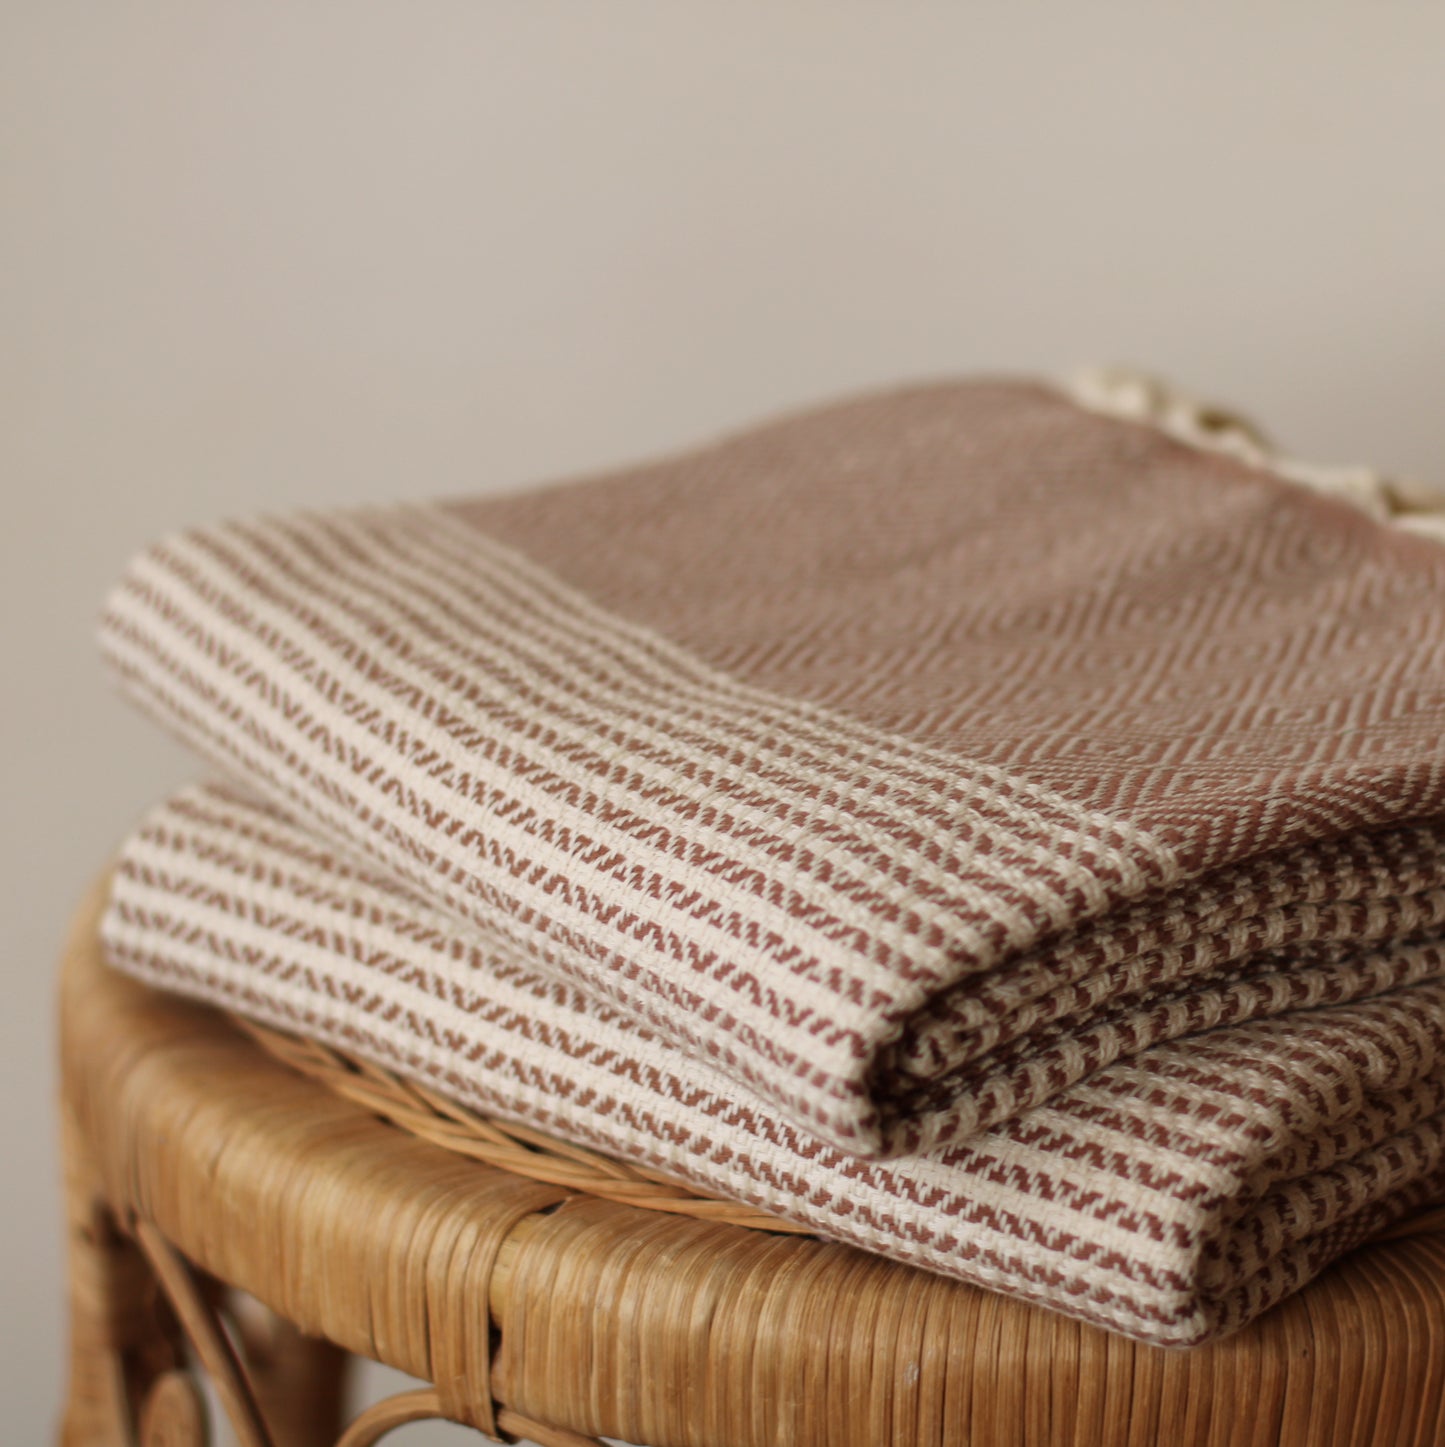 100% Cotton Turkish Towel, Dark Brown, Striped Pattern